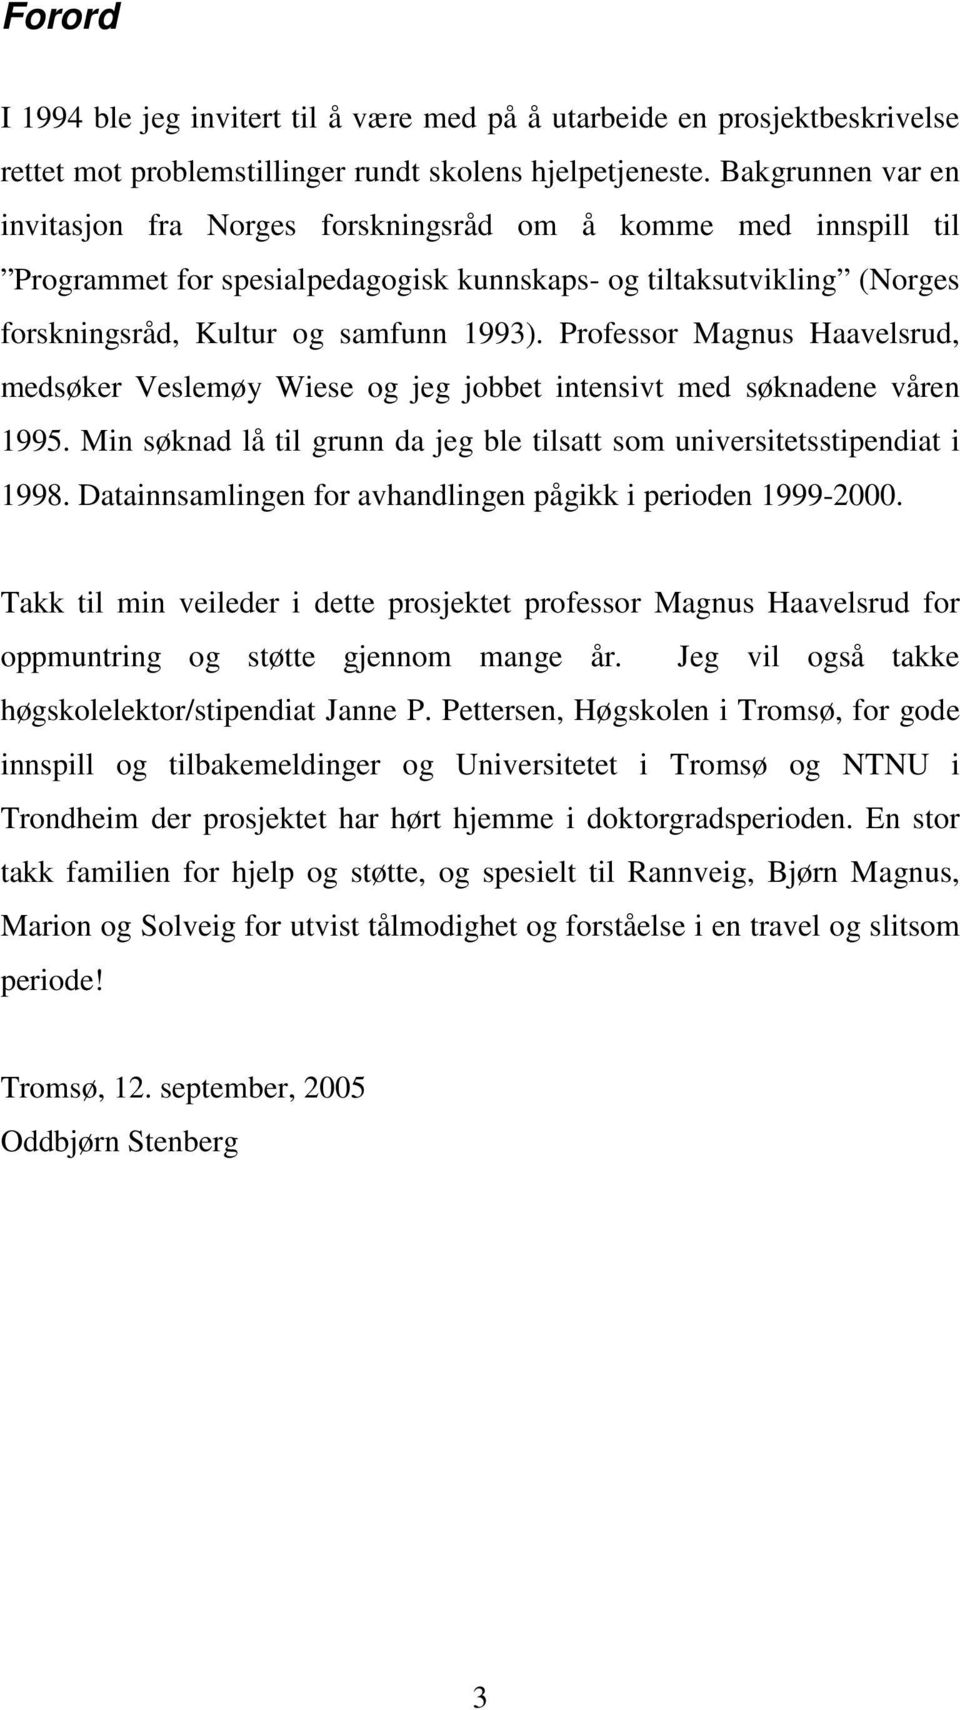 Professor Magnus Haavelsrud, medsøker Veslemøy Wiese og jeg jobbet intensivt med søknadene våren 1995. Min søknad lå til grunn da jeg ble tilsatt som universitetsstipendiat i 1998.